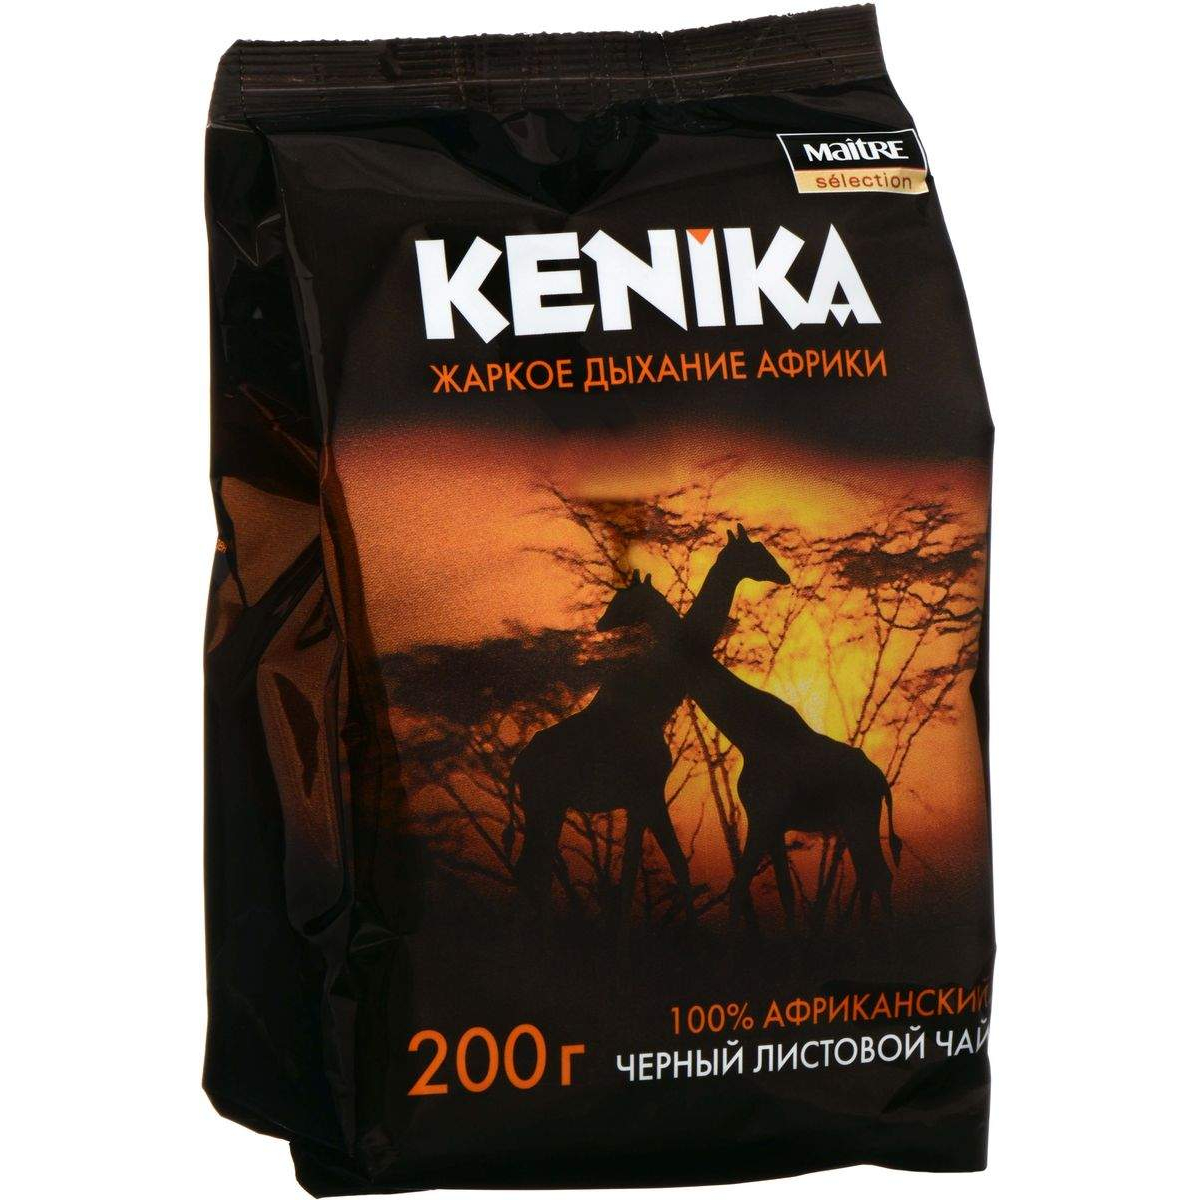 Чай черный Maitre de The selection Kenika листовой, 200 г чай черный maitre selection kenika байховый ассорти 25 пакетиков